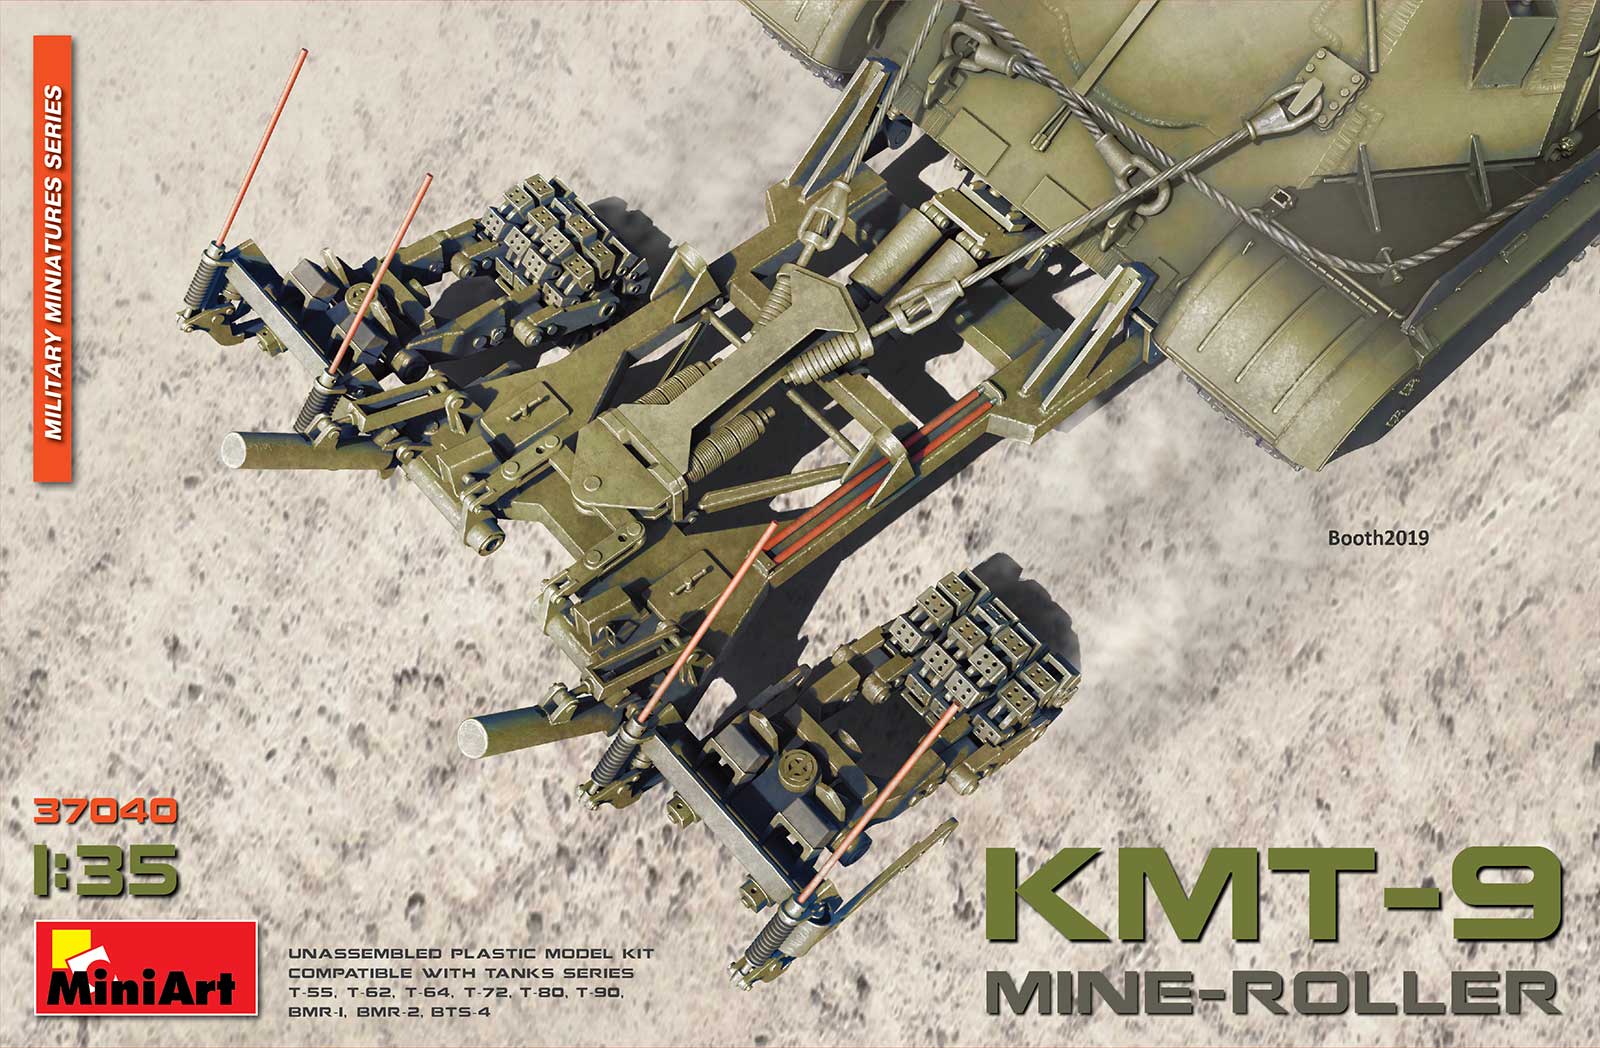 1/35 MINE-ROLLER KMT-9 37040